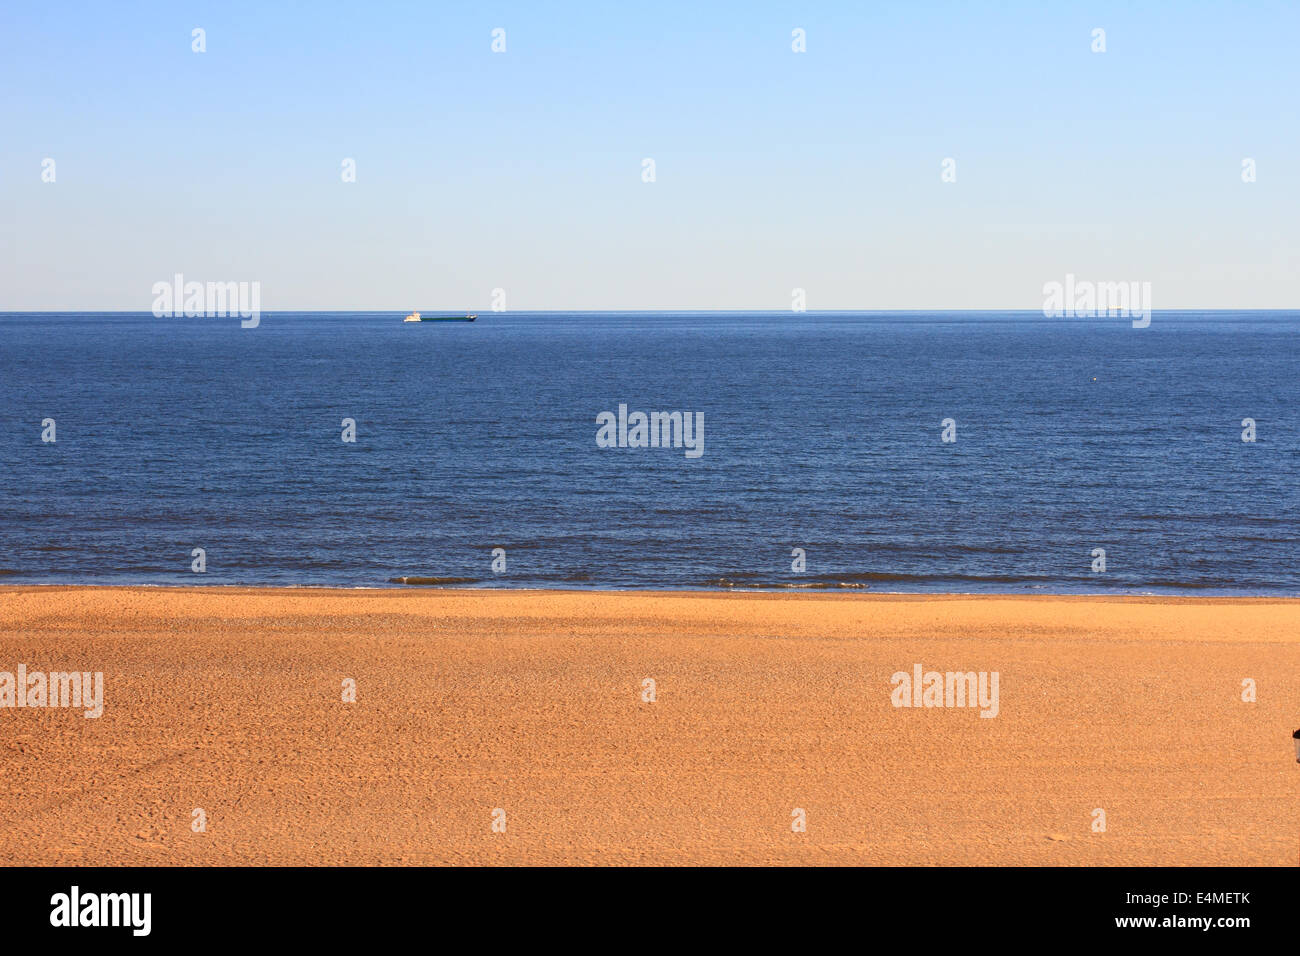 Playa en Gorleston tarde, cielo y mar de arena,3 capas, el mar, el mar del Norte, el buque de carga, Foto de stock